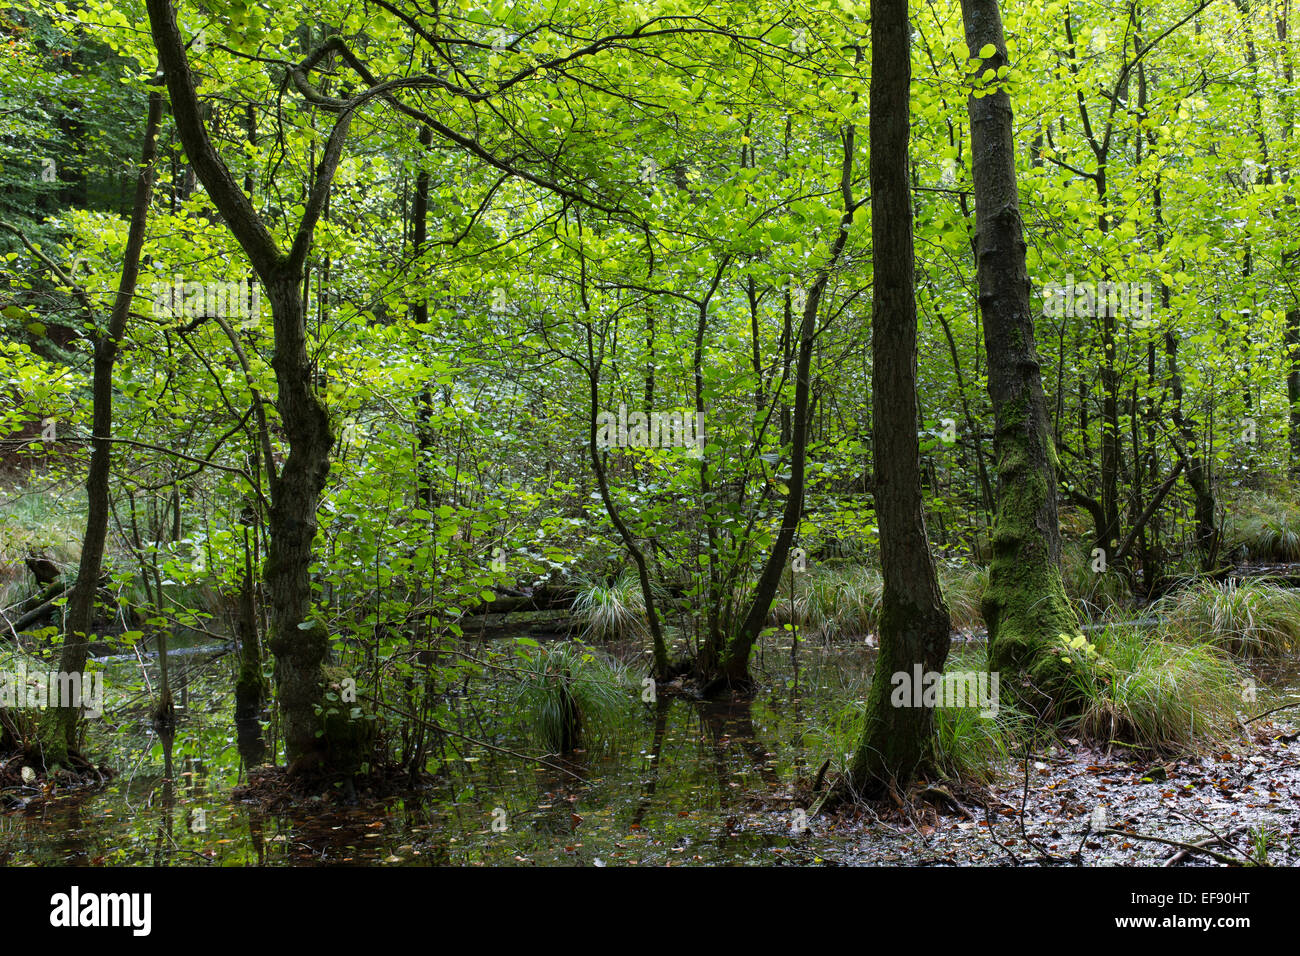 Riparian forest, Common Alder, Erlenbruch, Bruchwald, Schwarz-Erle, Schwarzerle, Erlen, Ufergehölz, Alnus glutinosa, Sumpf Stock Photo